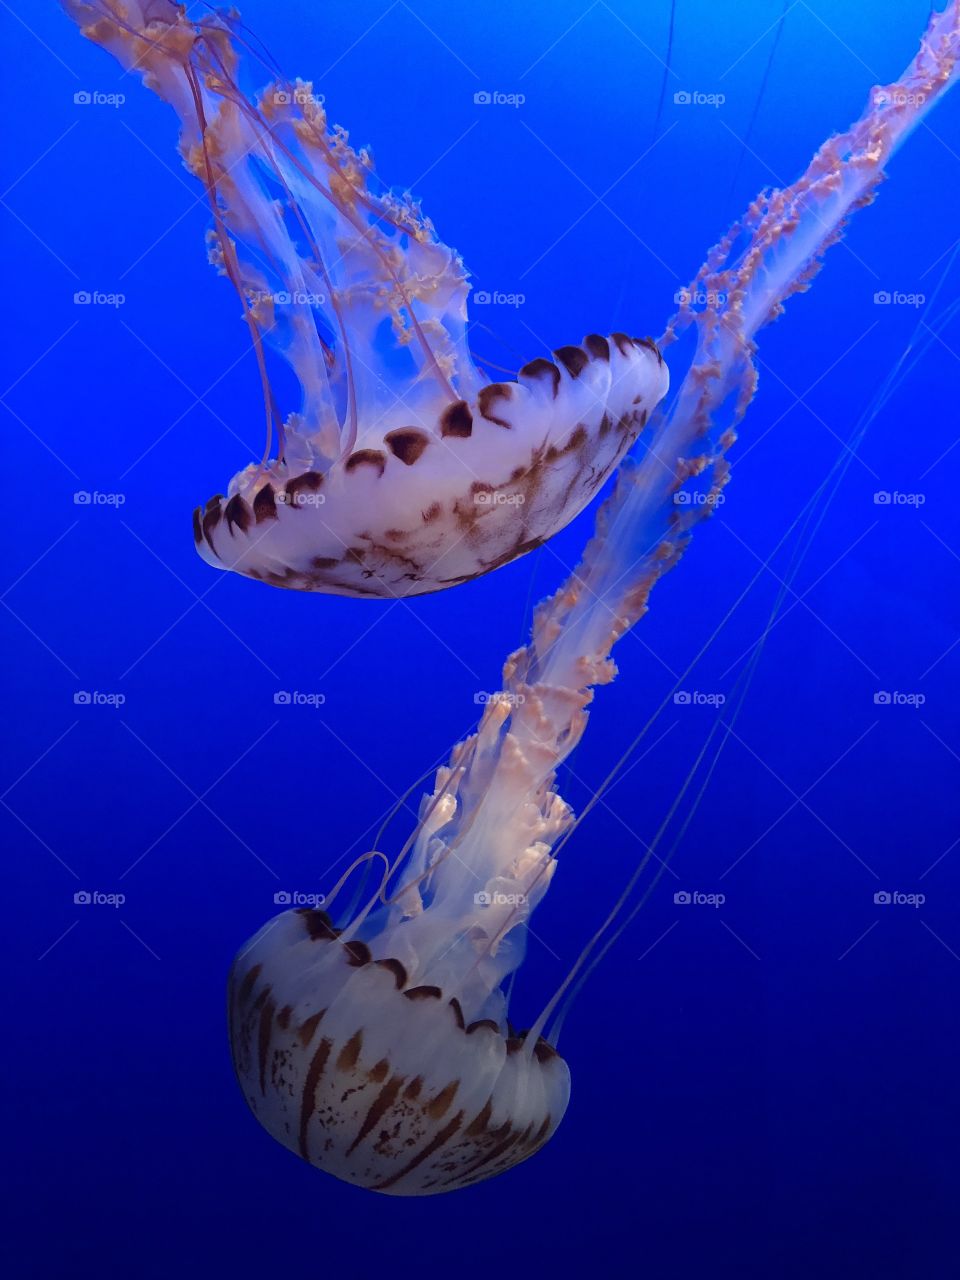 Dancing jellyfish of Monterey Aquarium. 2018